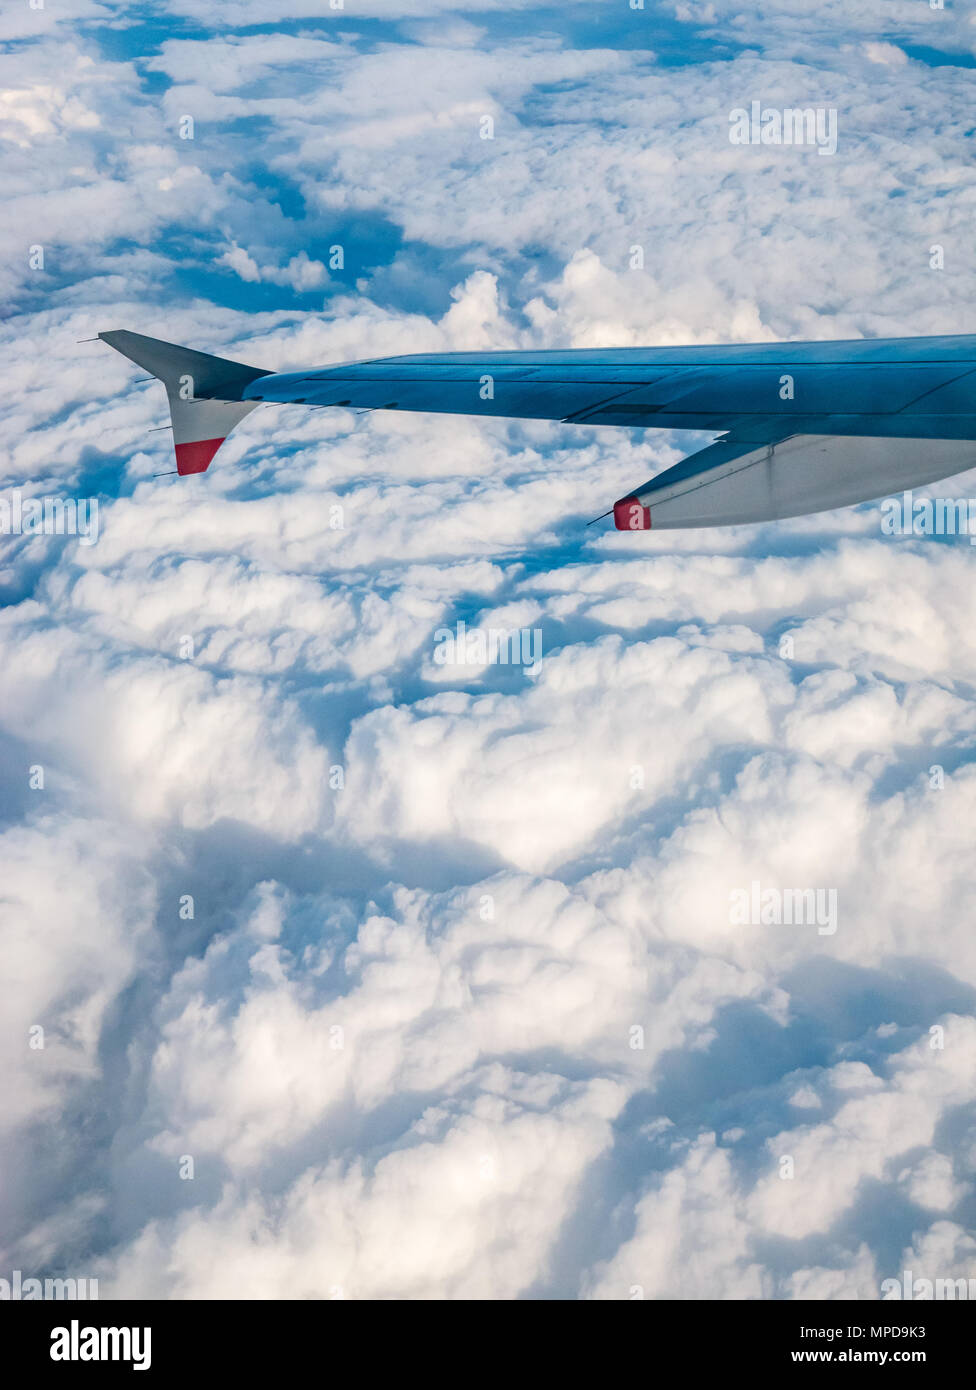 British Airways Airbus 319 Flugzeug Flügel aus dem Flugzeug Fenster beim Flug über geschwollene weiße Wolken in Großbritannien gesehen Stockfoto